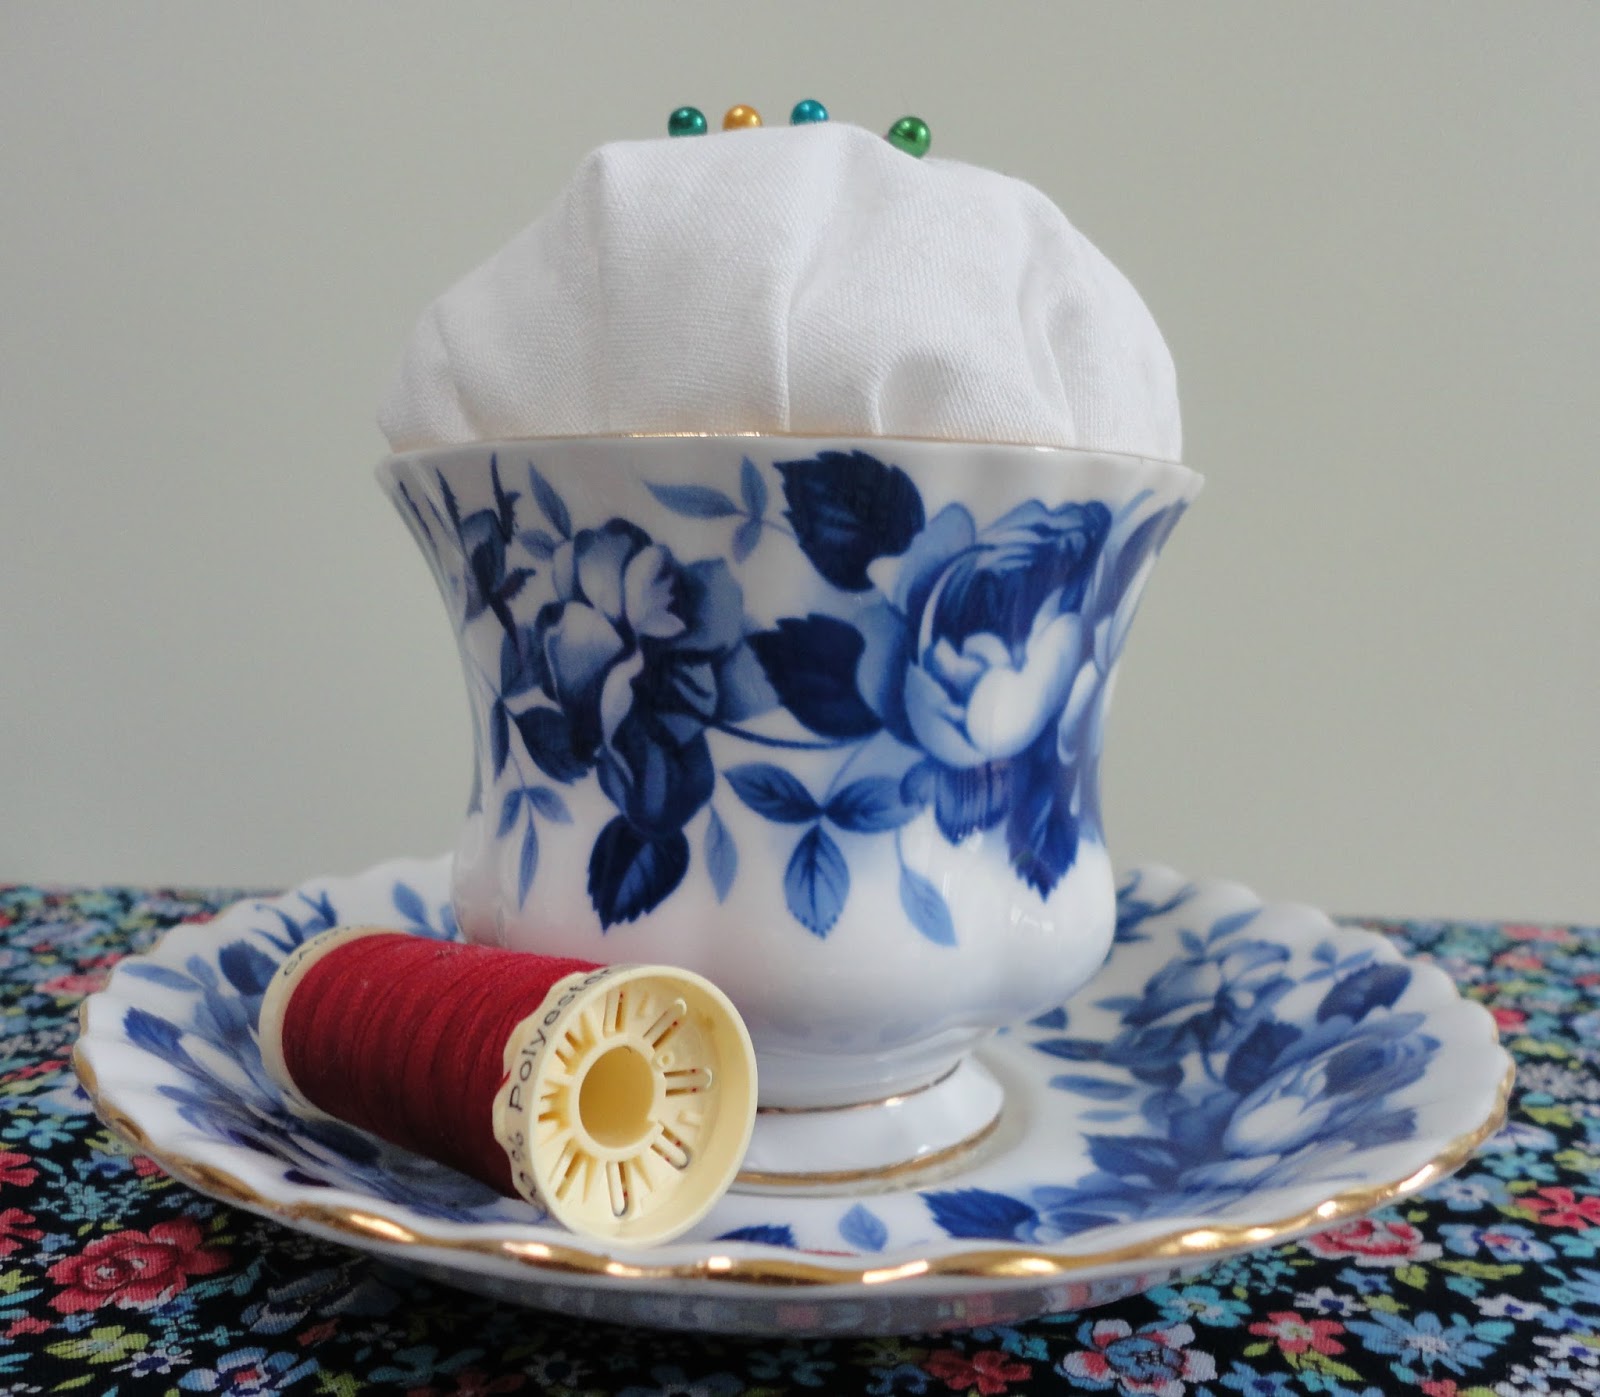 A vintage teacup pincushion